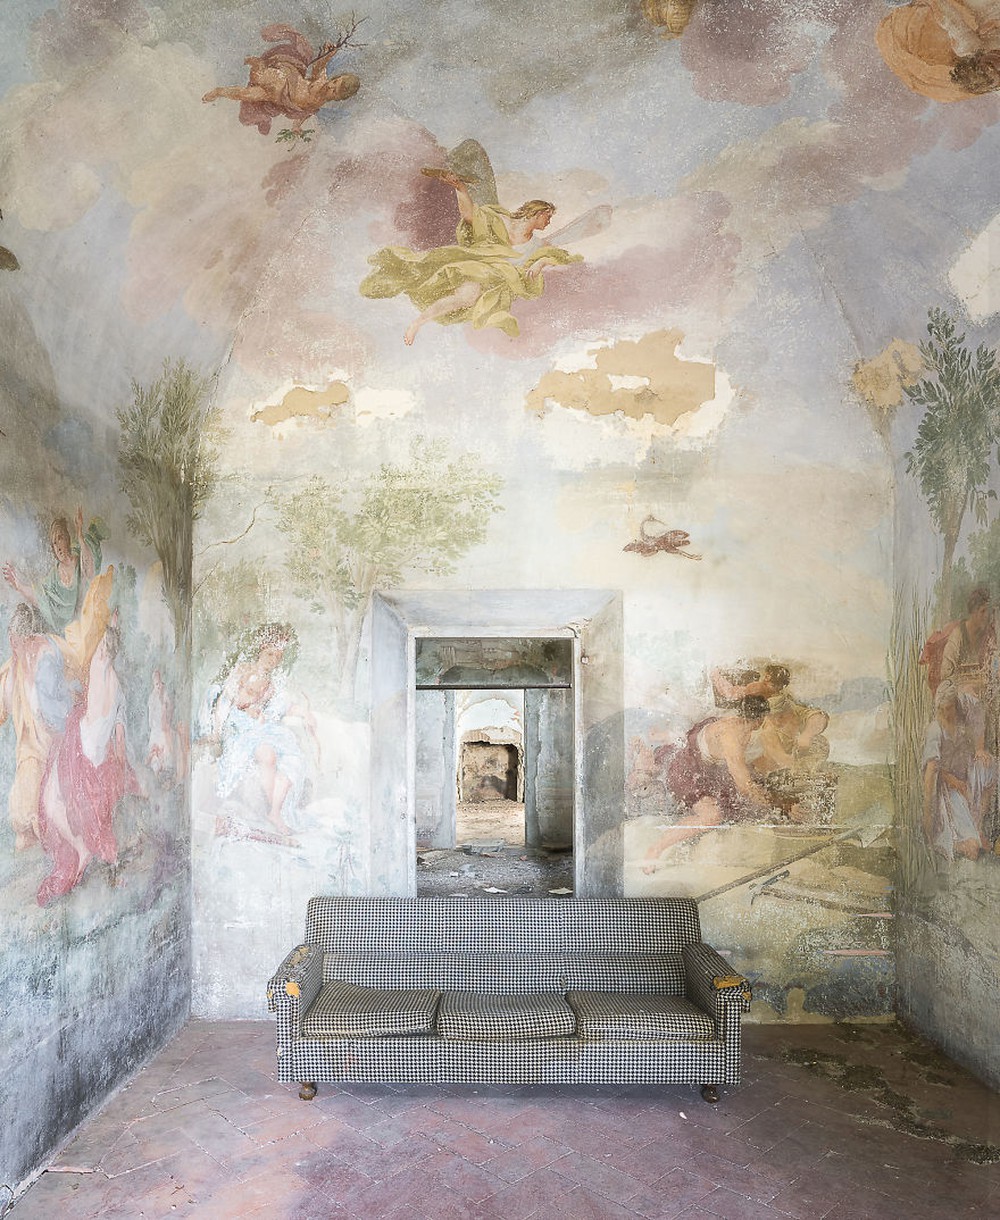 Nhiếp ảnh gia đi khắp nước Ý chụp những căn nhà bỏ hoang, kết quả thu được gây ngỡ ngàng - Ảnh 9.